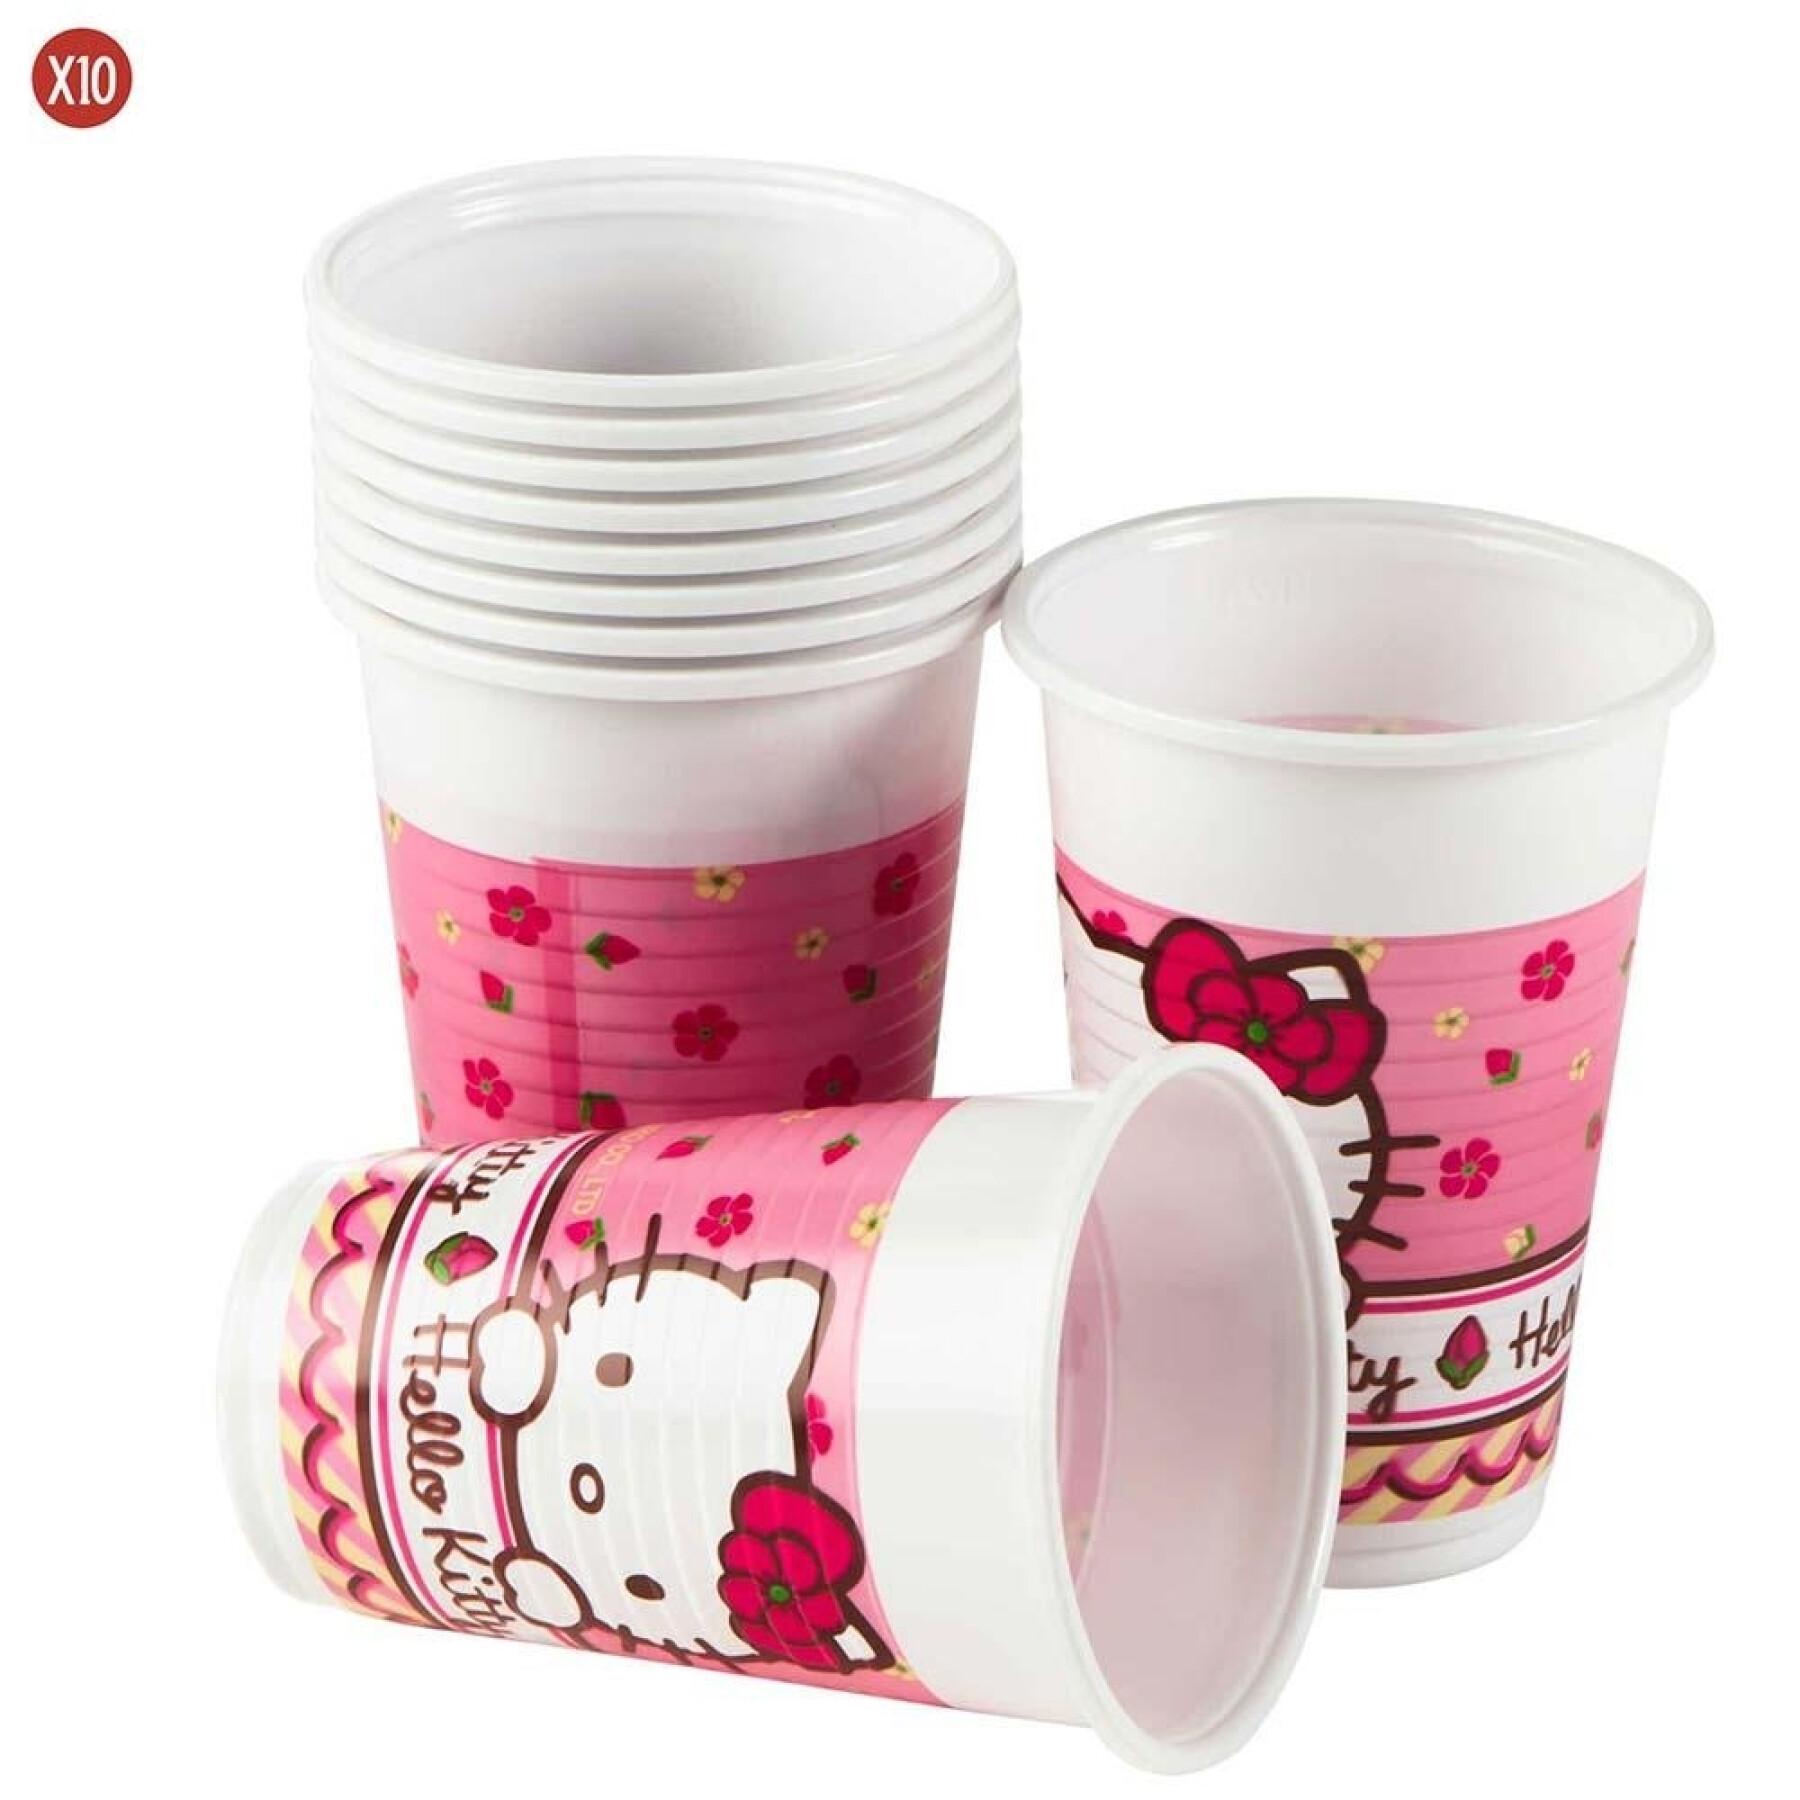 Confezione 10 bicchieri di plastica Hello Kitty